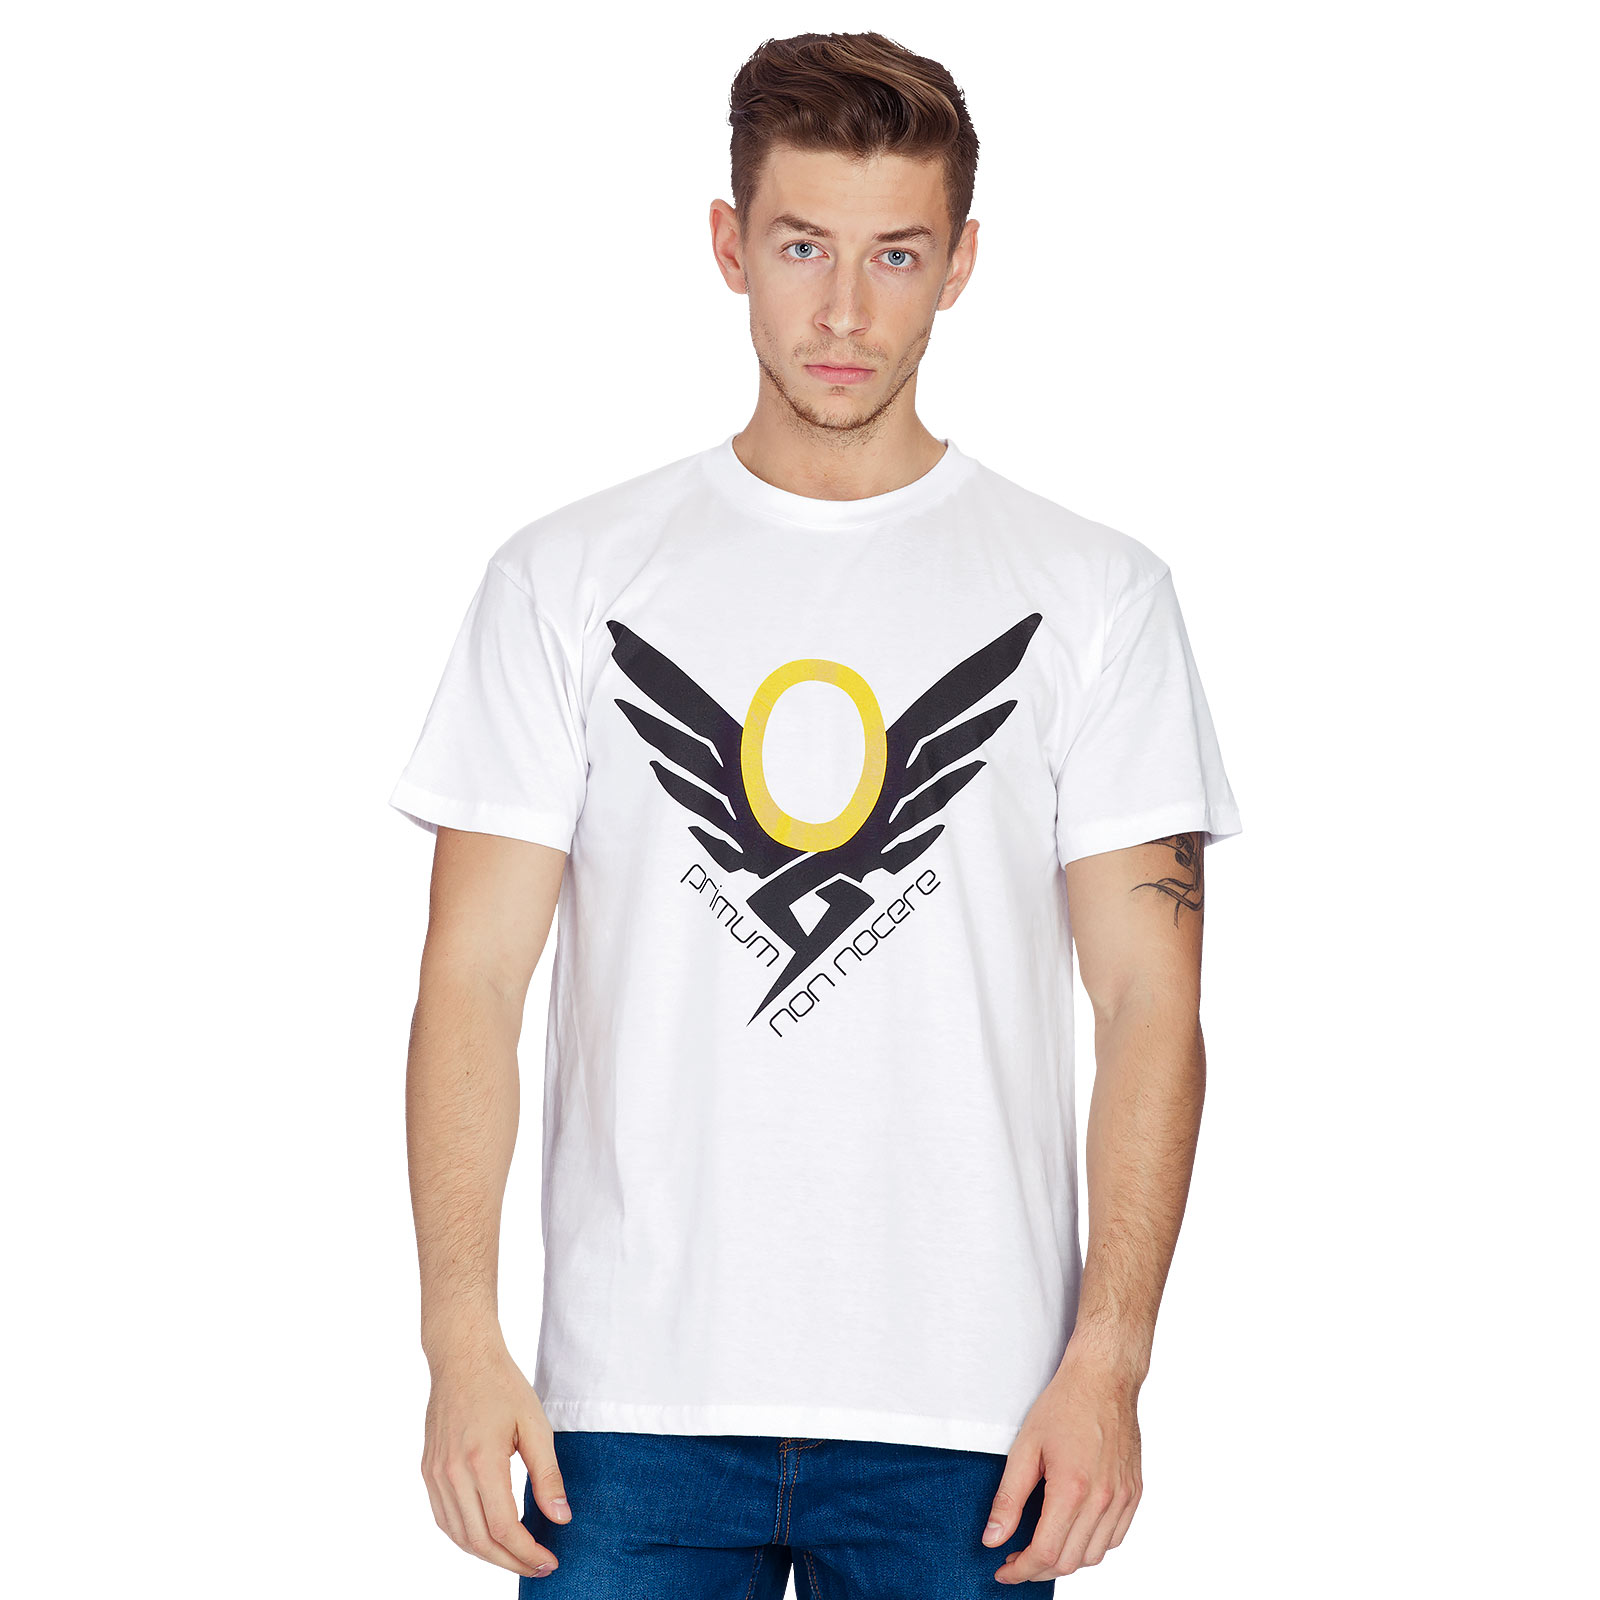 Overwatch - Mercy T-Shirt white